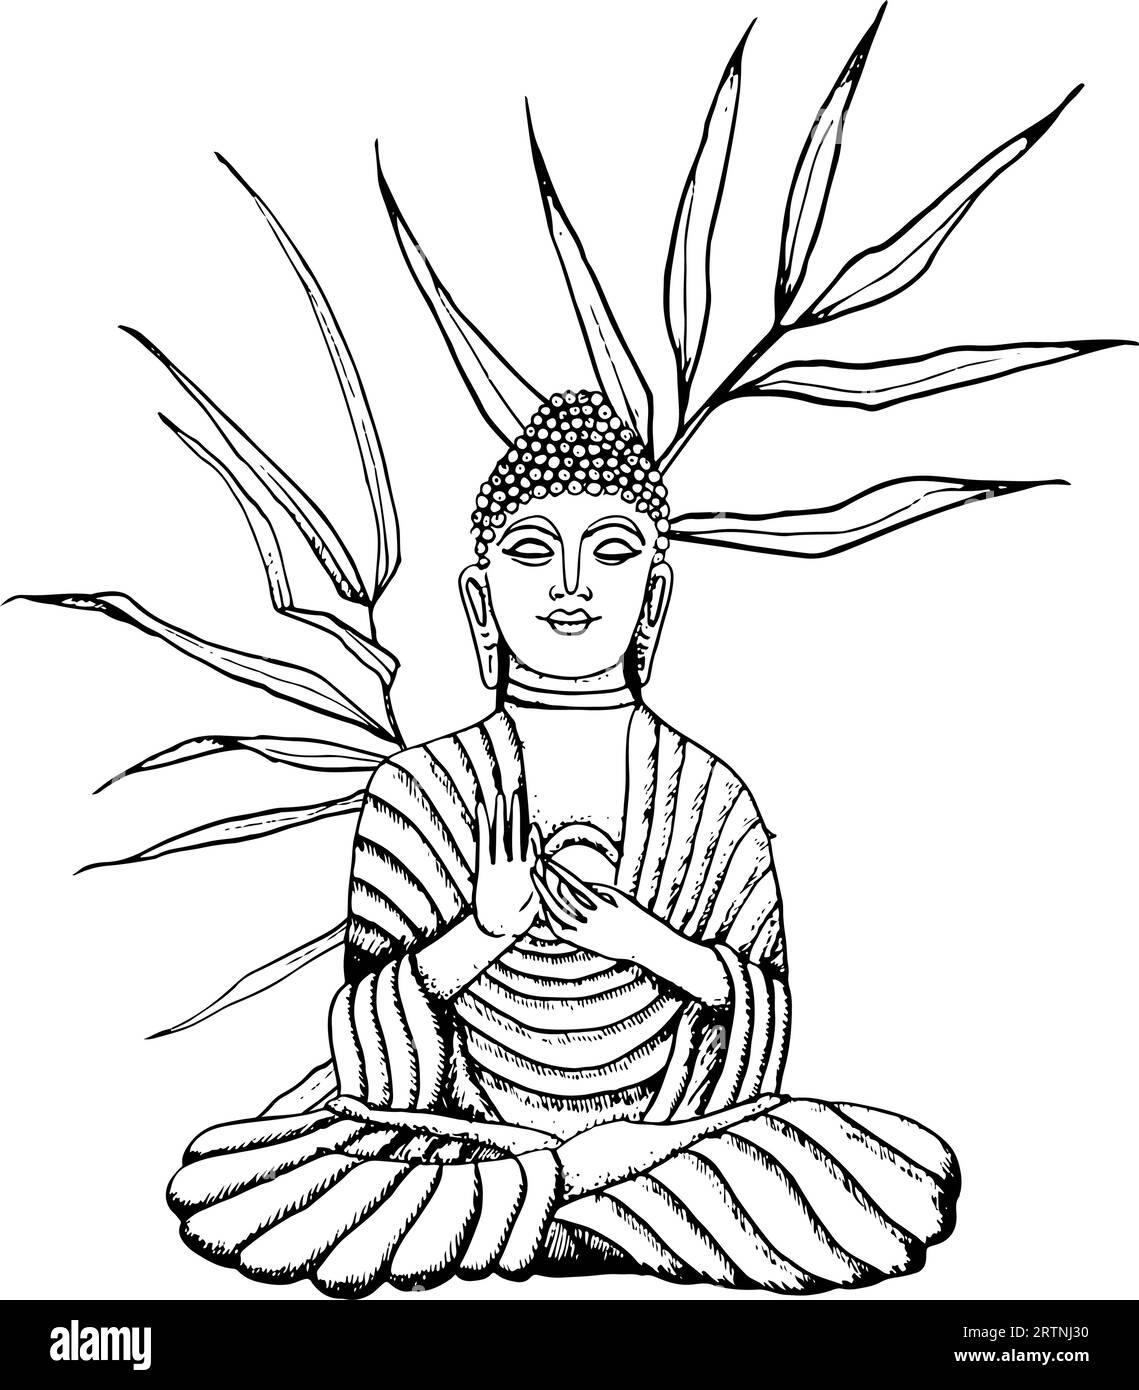 Bouddha assis dans des branches de bambou dessiné à la main illustration vectorielle d'art de ligne. Elément de méditation pour le yoga, le bouddhisme Illustration de Vecteur